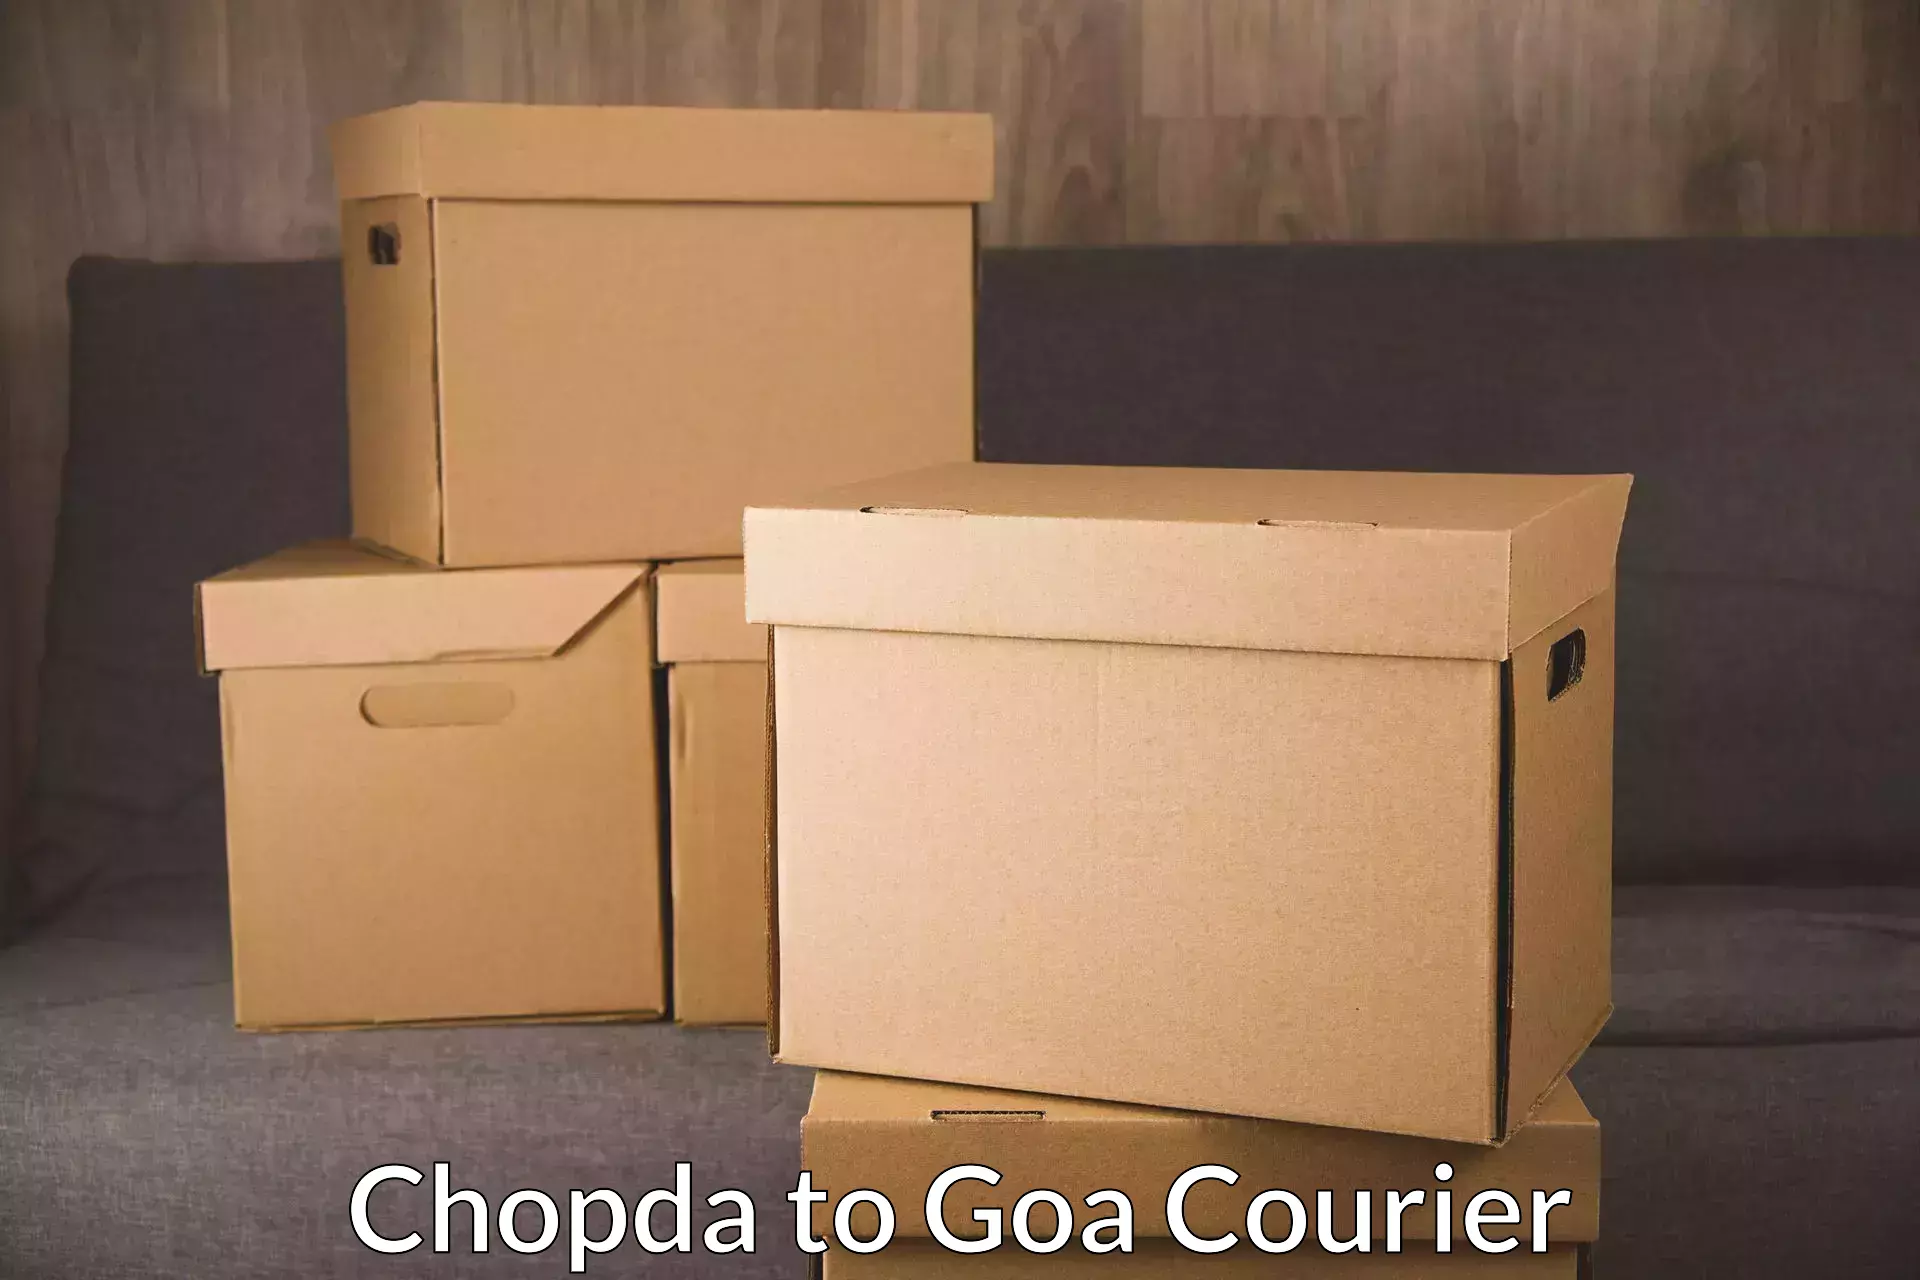 Courier service comparison Chopda to Mormugao Port